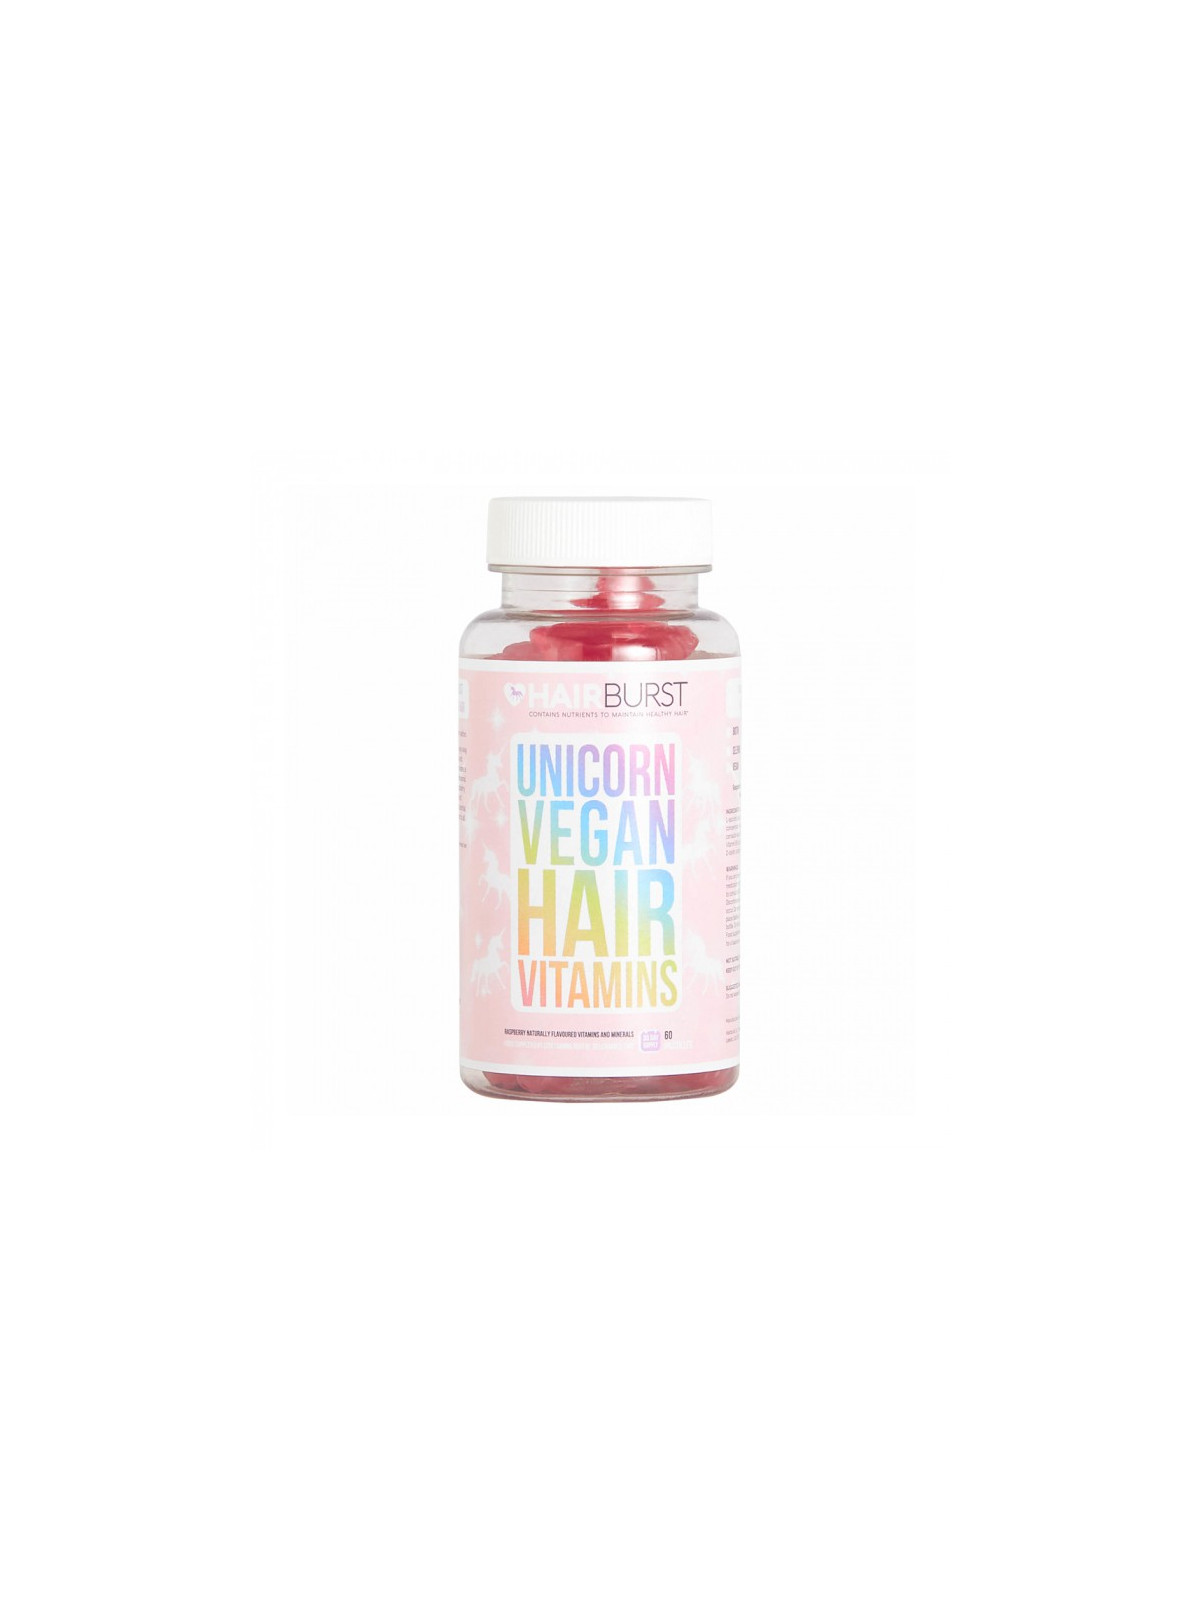 Veganiški maisto papildai plaukams, aviečių skonio HAIRBURST  Unicorn Vegan Hair Vitamins 60 guminukų